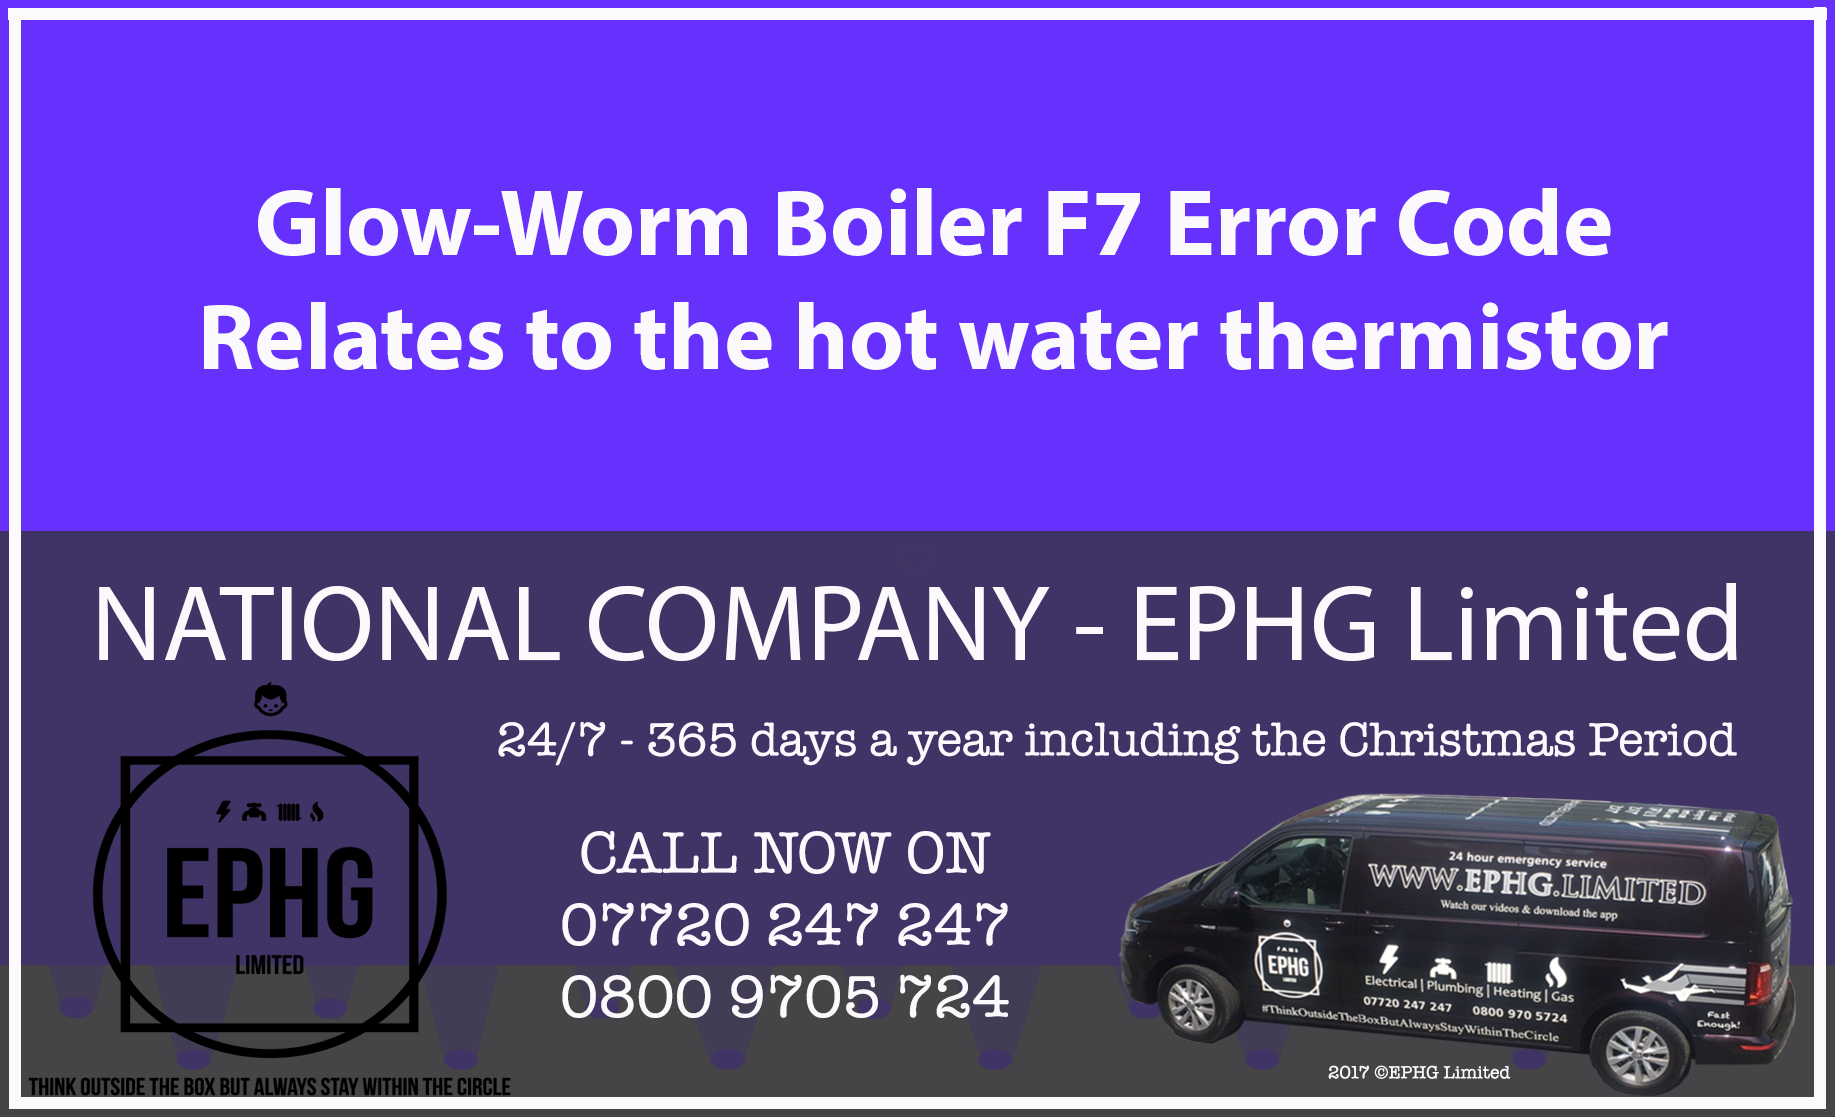 Glow-Worm boiler error code F7